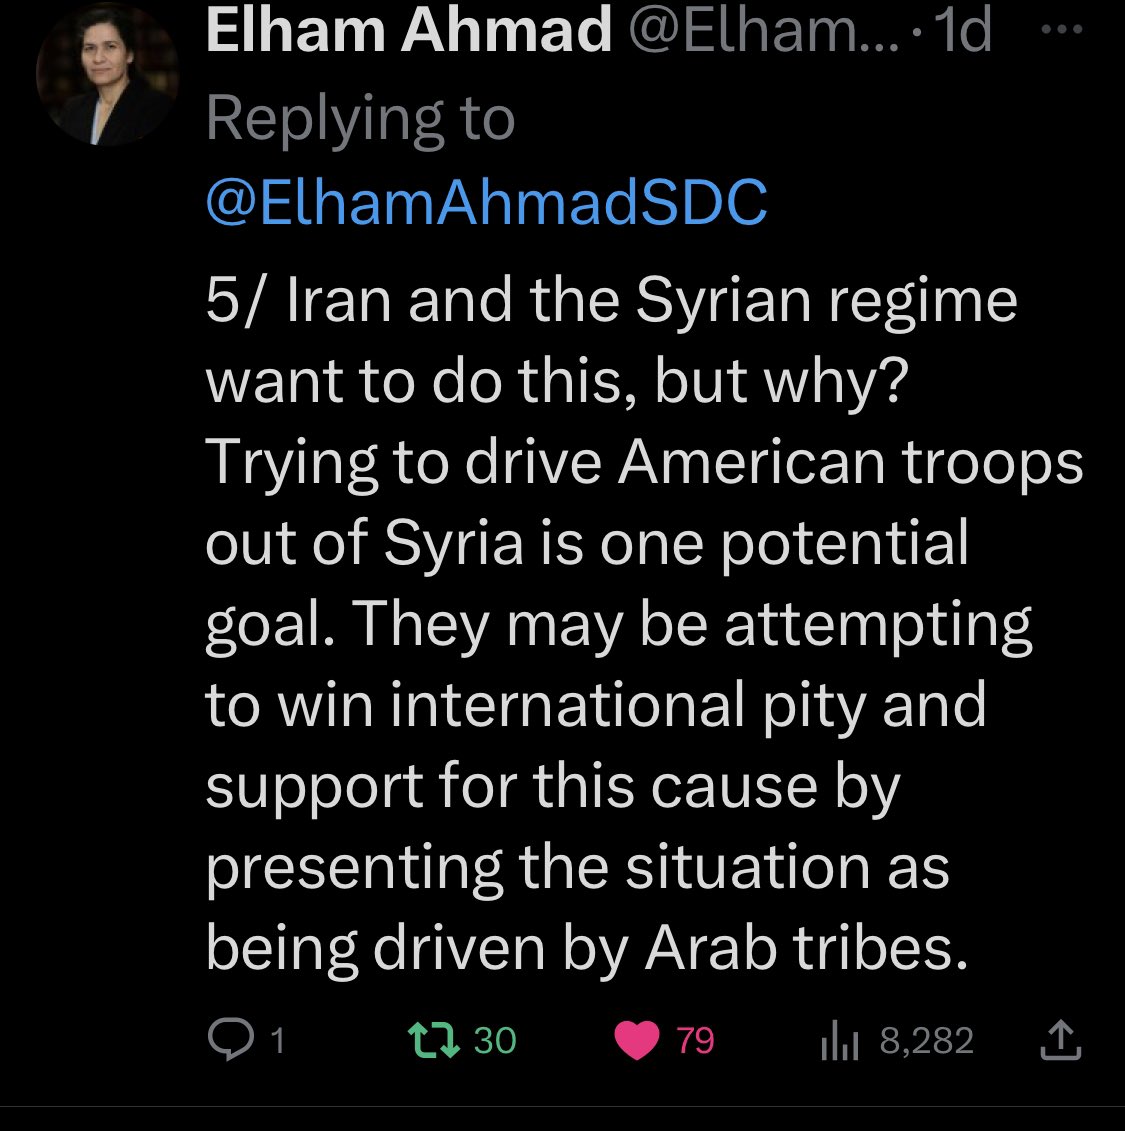 SDG başkanlığından @ElhamAhmadSDC diyor ki; “deirezor’daki olayların arkasında iran ve rejim var” doğru söylüyor. KRG-Bağdat arası anlaşma ile Kürd ordusu #Kerkuk de konuşlanacak ve buna karşı ayaklanan ve kürd kanı dökenlerin arkasında kim var; elbet iran. Pkk’li medyaya göre